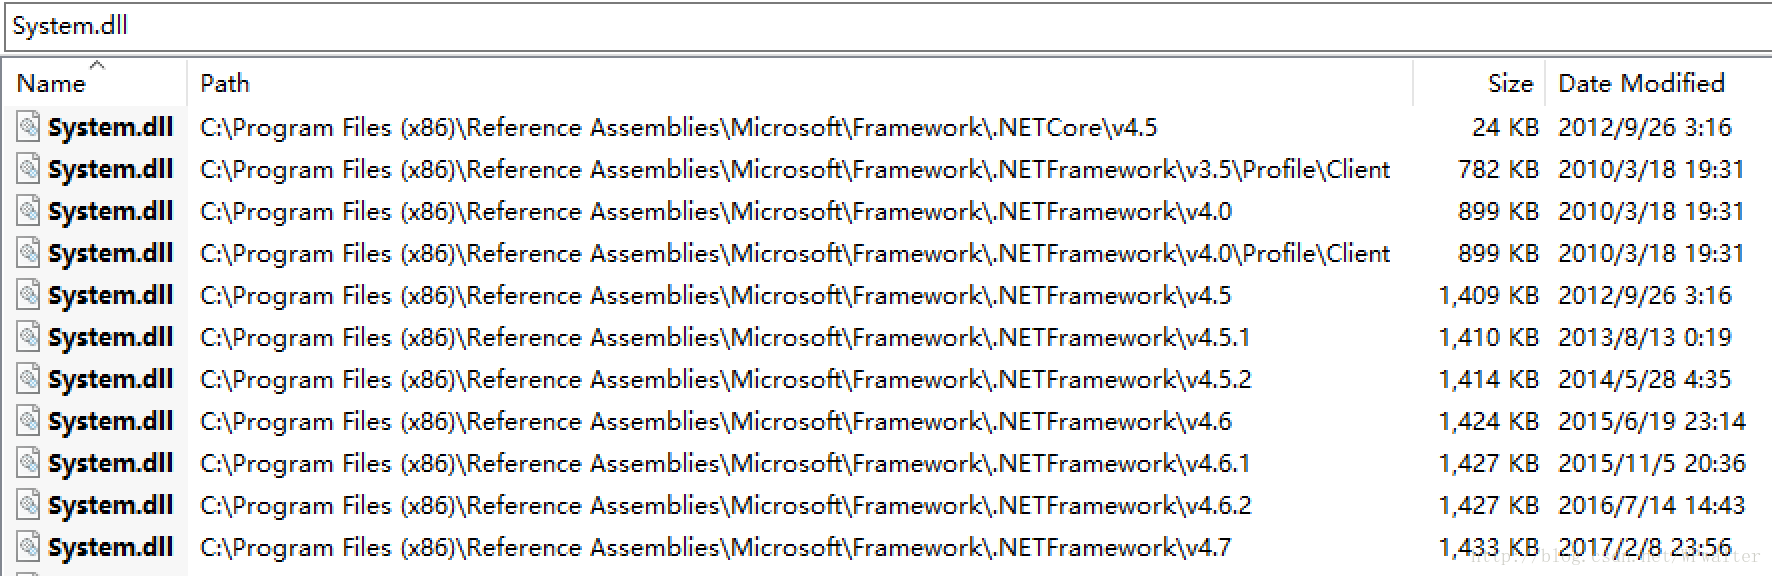 每一个不同的 .Net Framework 基础库有自己单独的文件夹